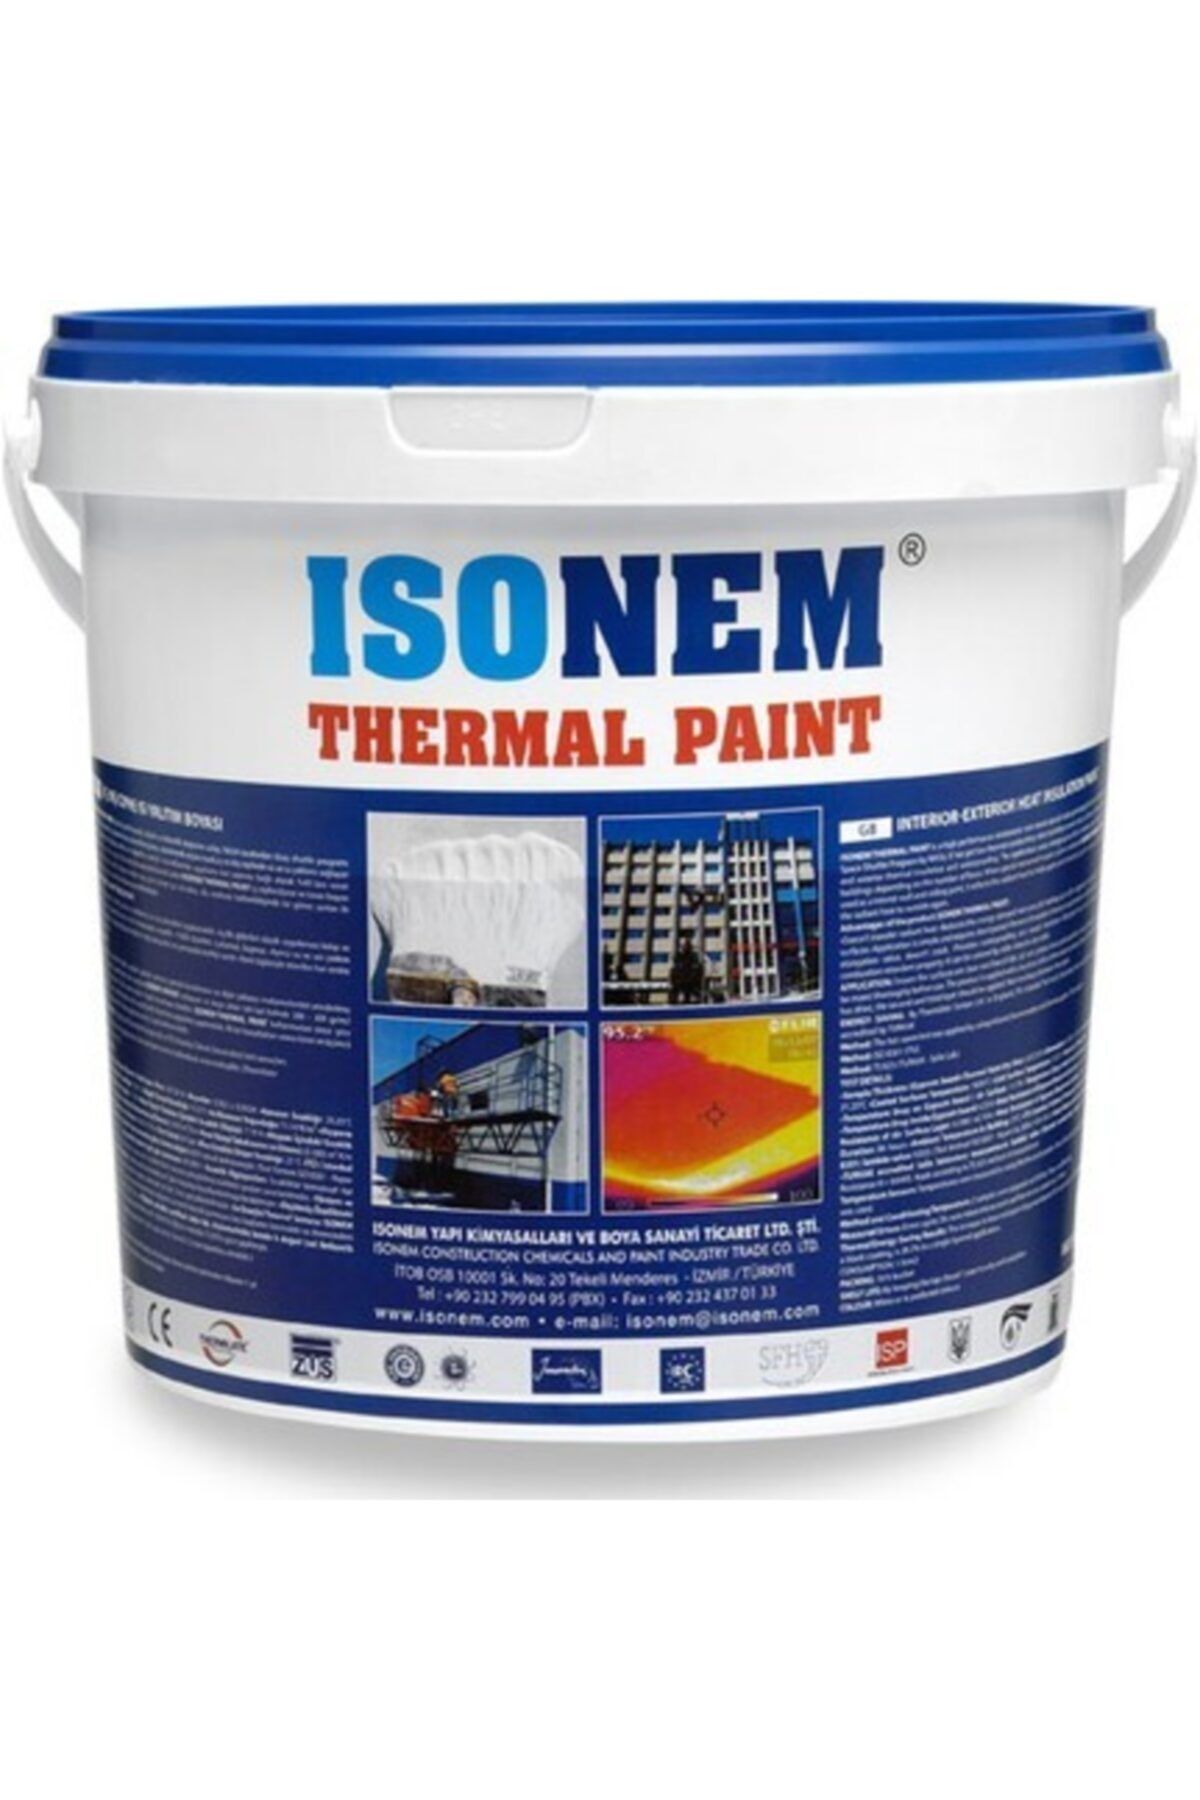 Isonem Thermal Paint Isı Yalıtım Boyası 18lt